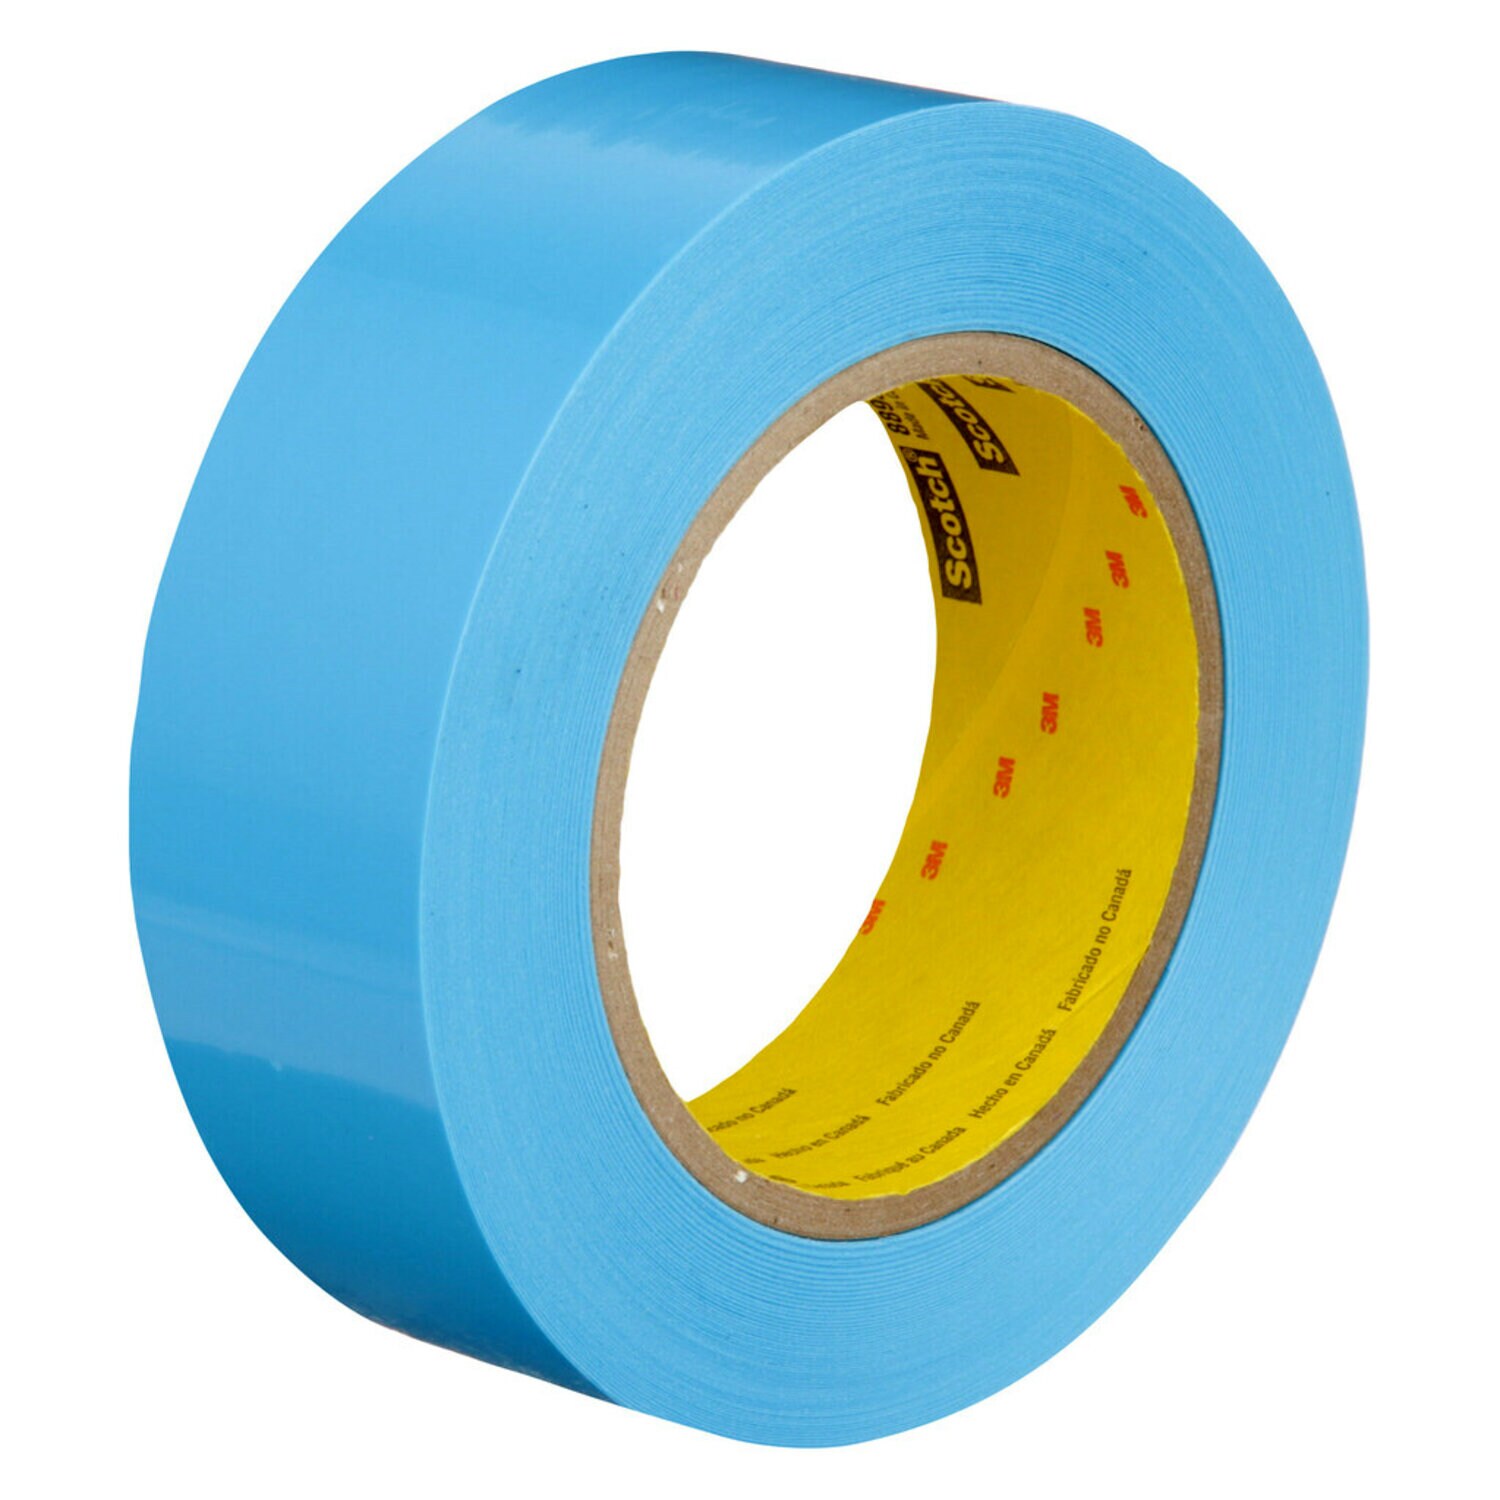 7000123986 - Scotch Strapping Tape 8896, Blue, 36 mm x 55 m, 24 rolls per case